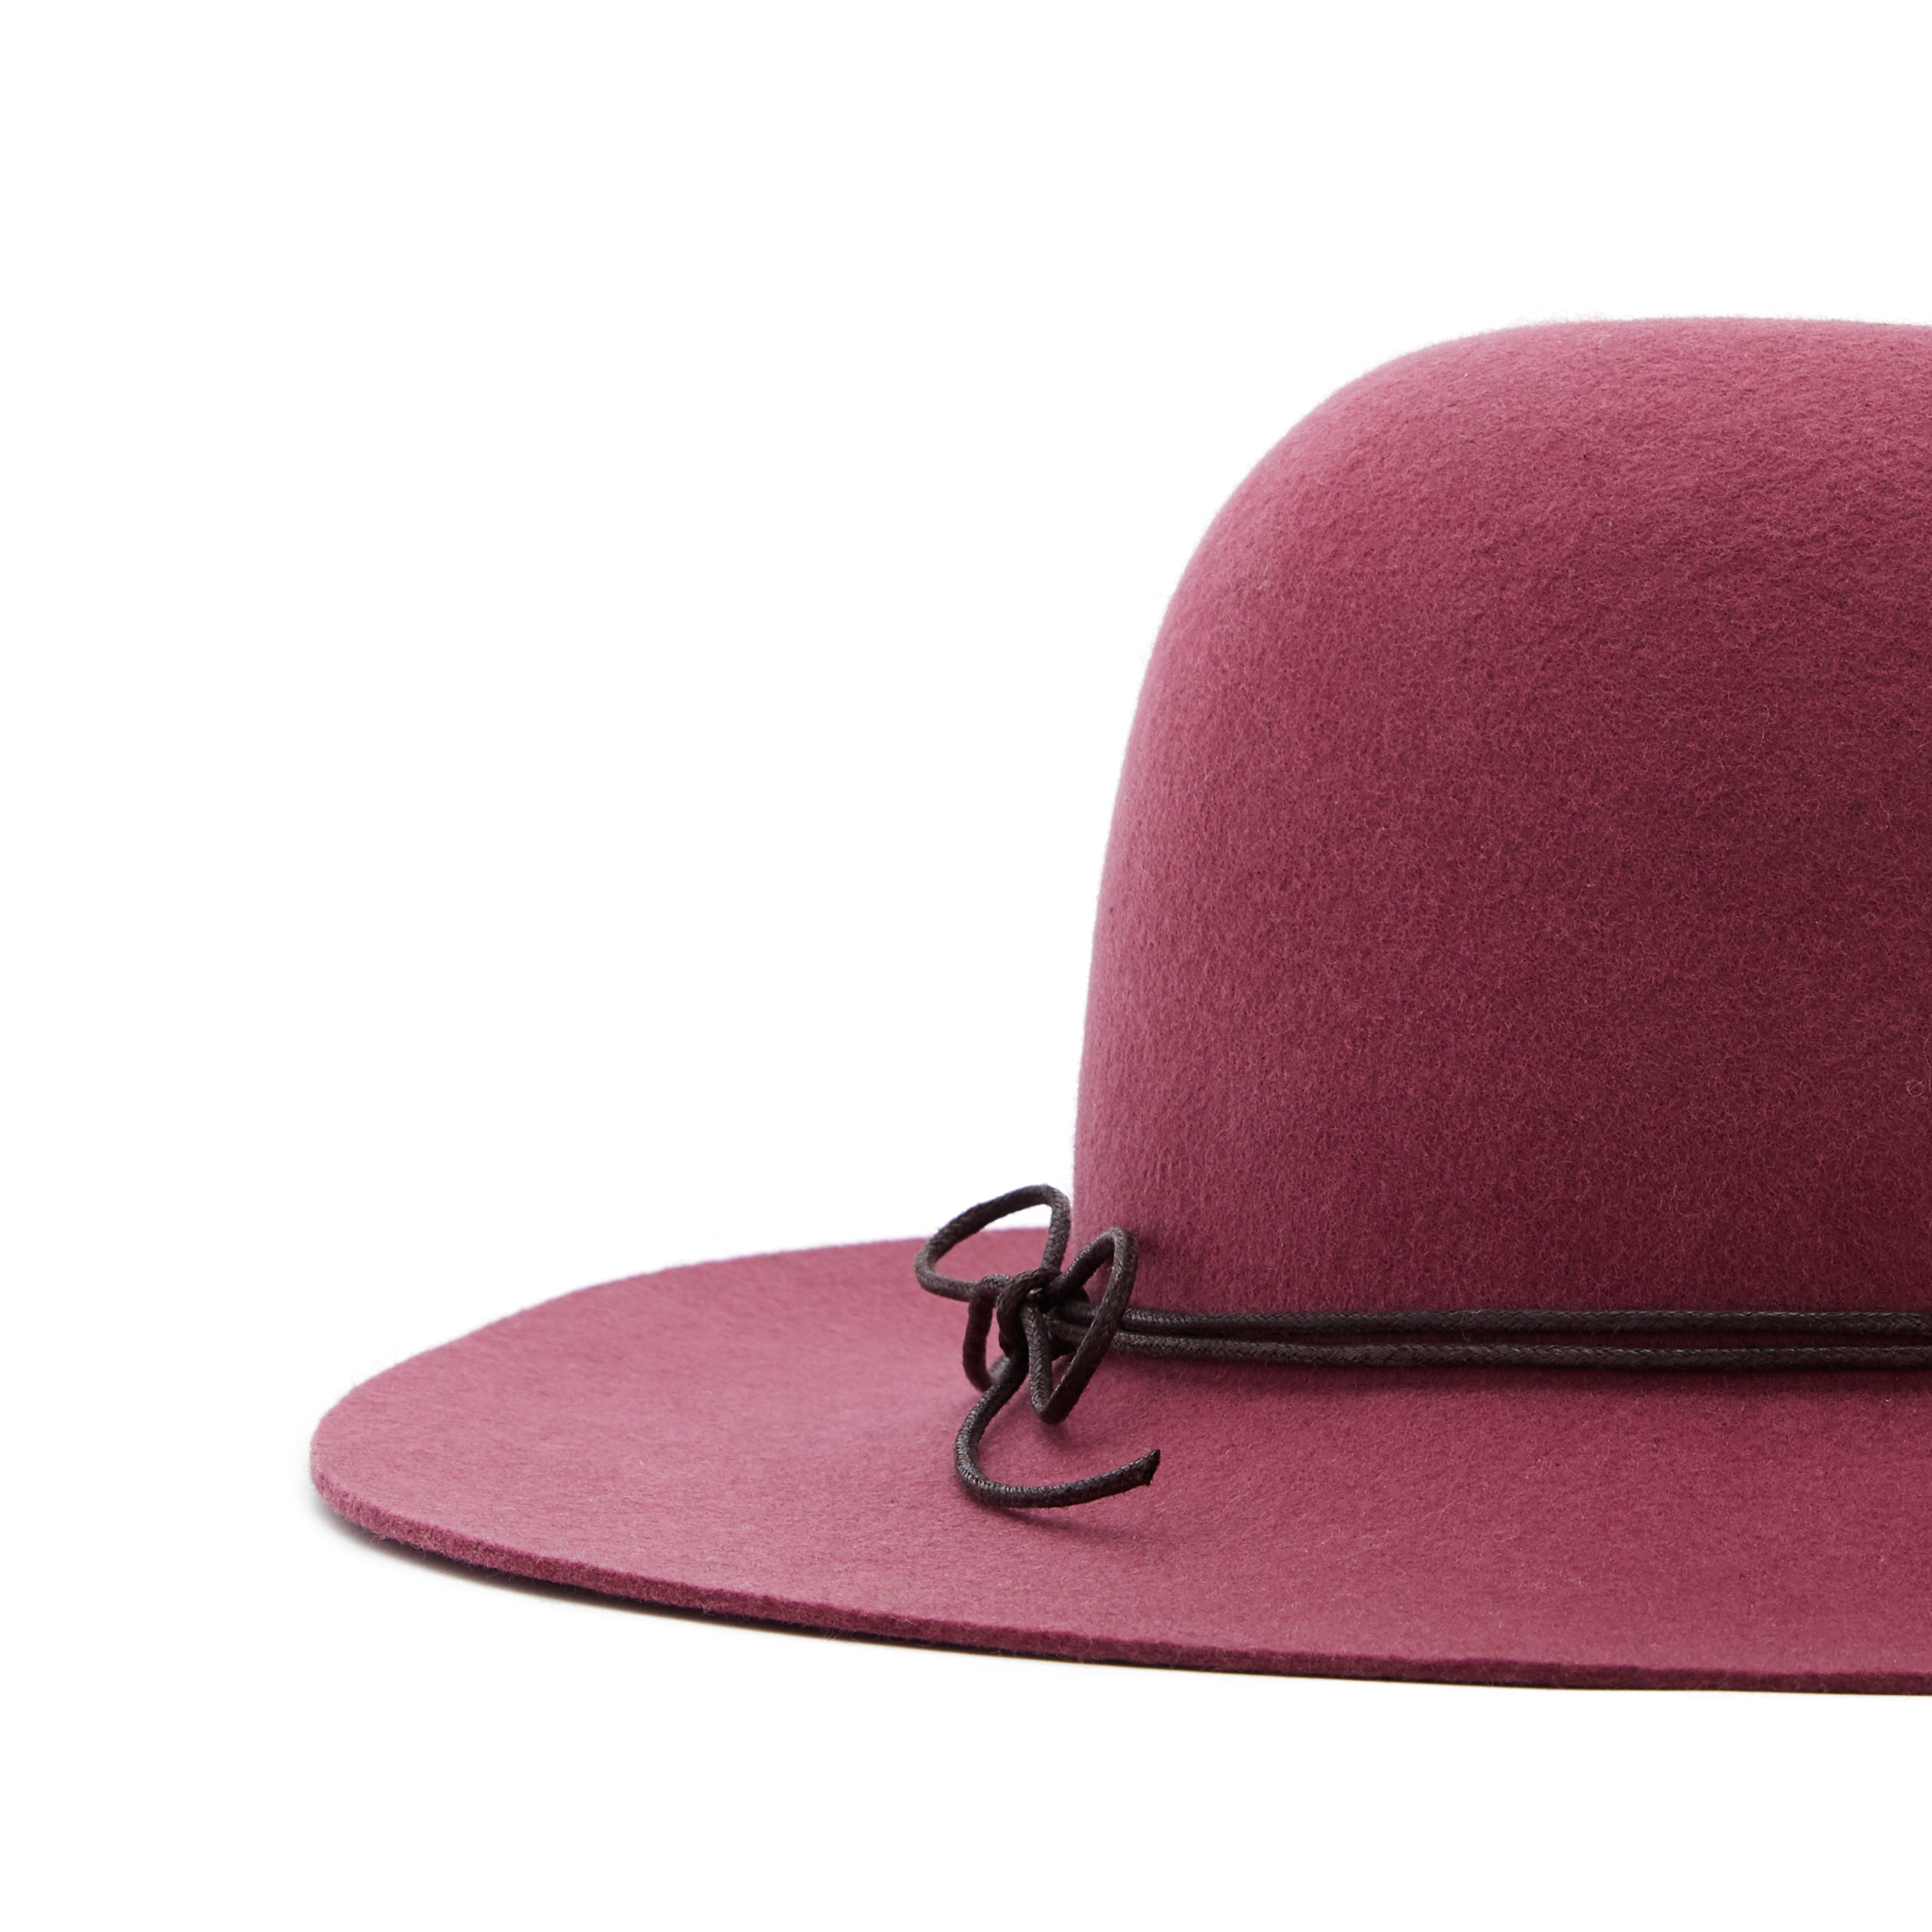 Girls Pink Wool Hat